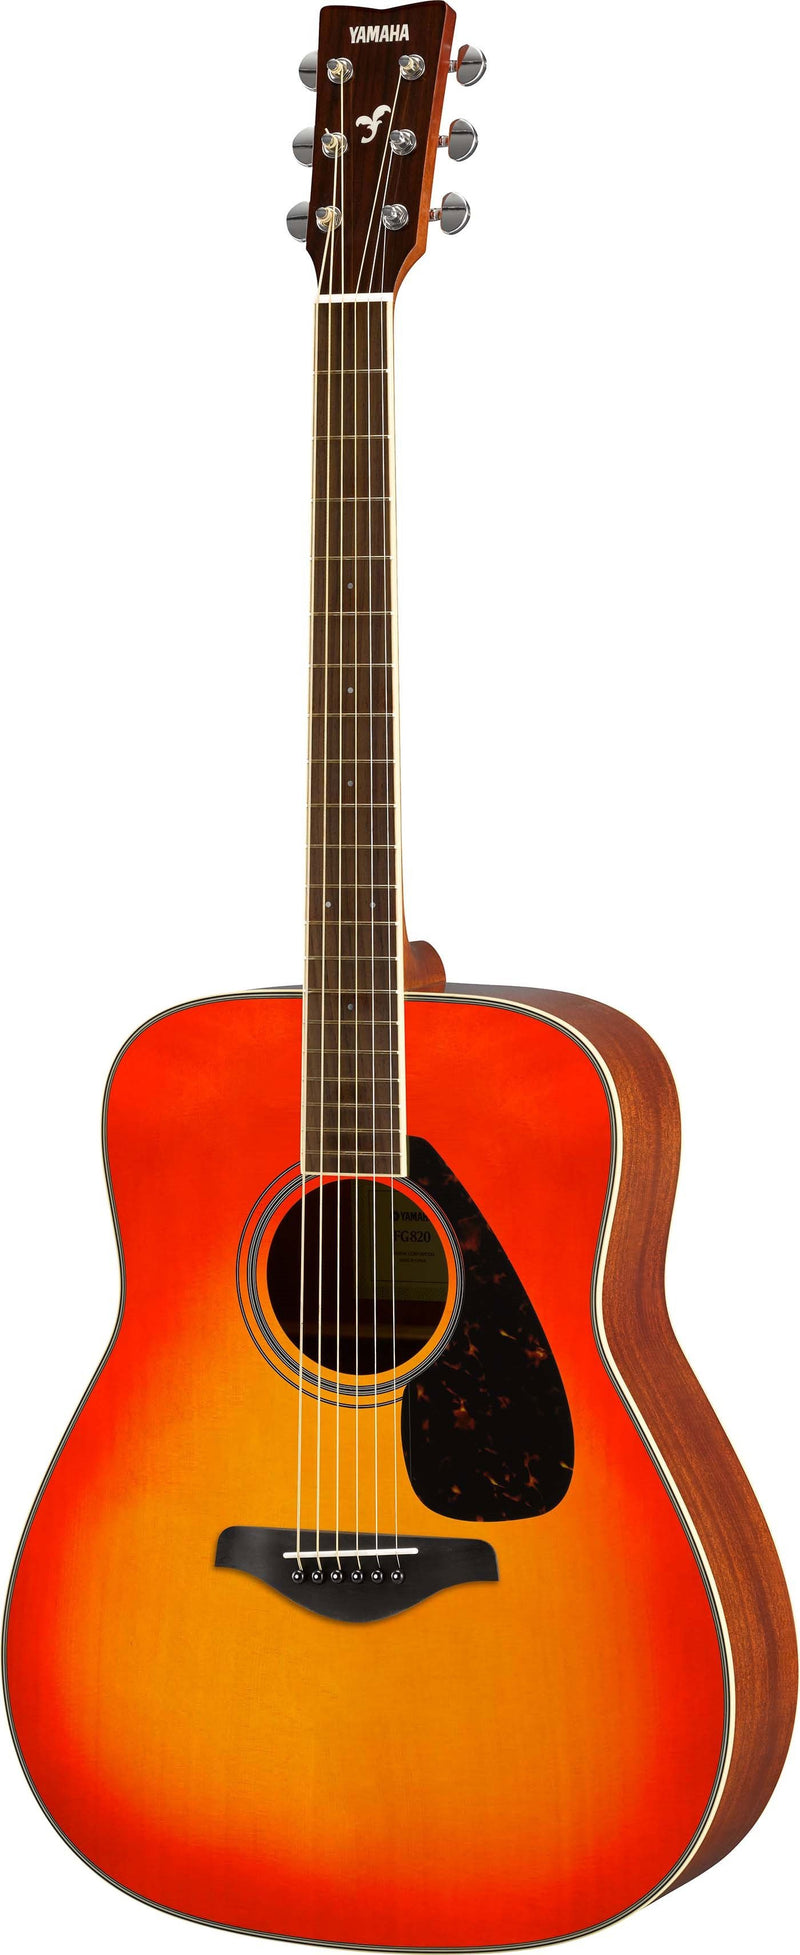 Yamaha FG820 Folk Guitar w/Solid Spruce Top